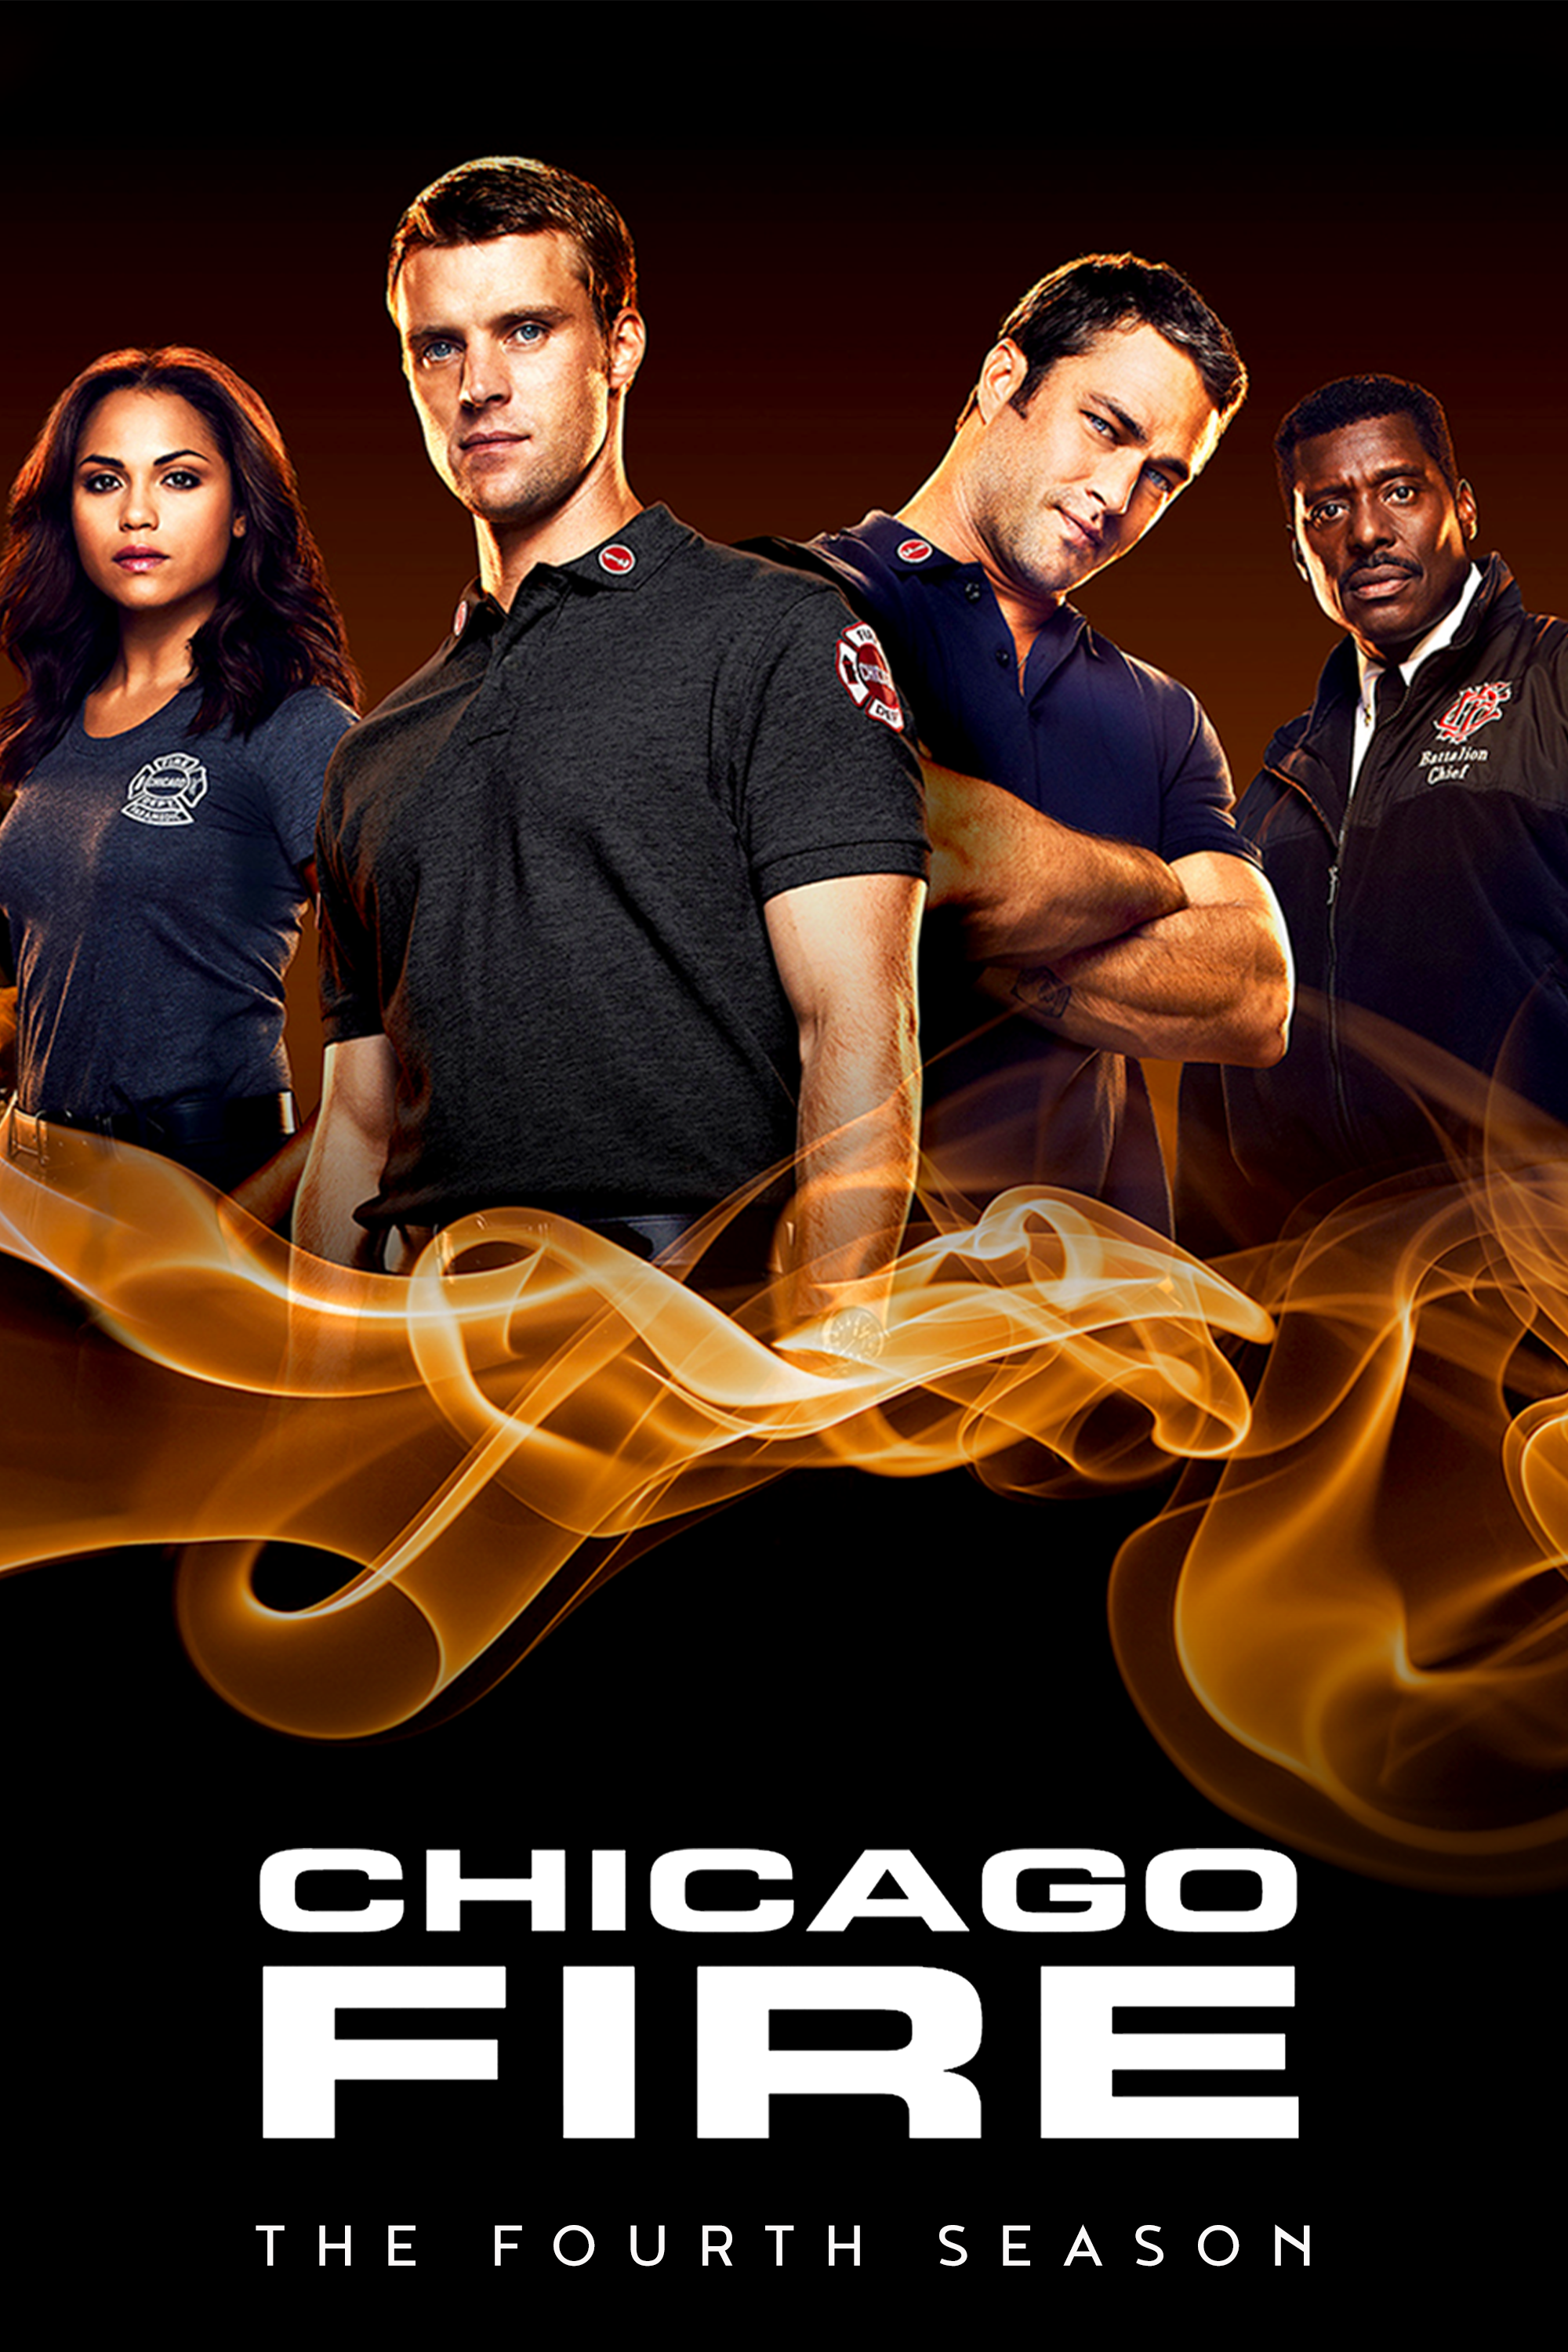 ดูหนังออนไลน์ฟรี Chicago Fire Season 4 EP.3 ชิคาโก้ ไฟร์ หน่วยดับเพลิงท้านรก ซีซั่นที่ 4 ตอนที่ 3